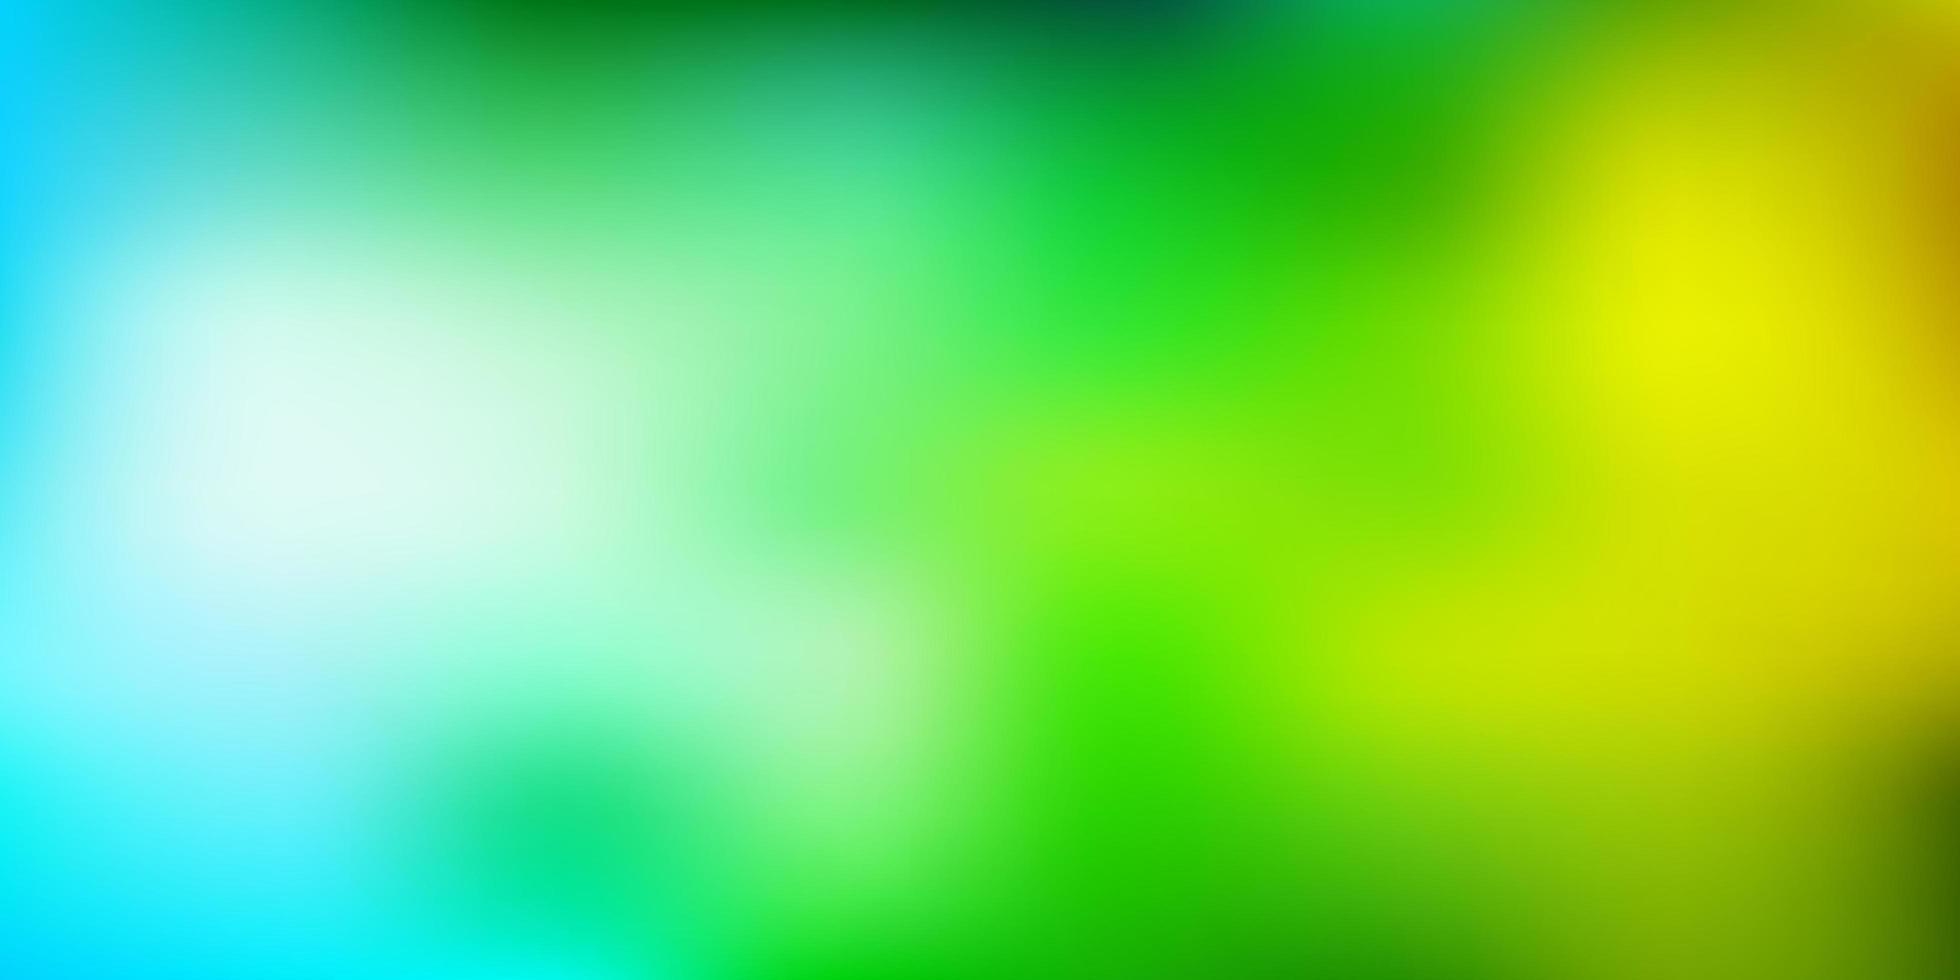 ljusblå, grön vektor gradient oskärpa mönster.